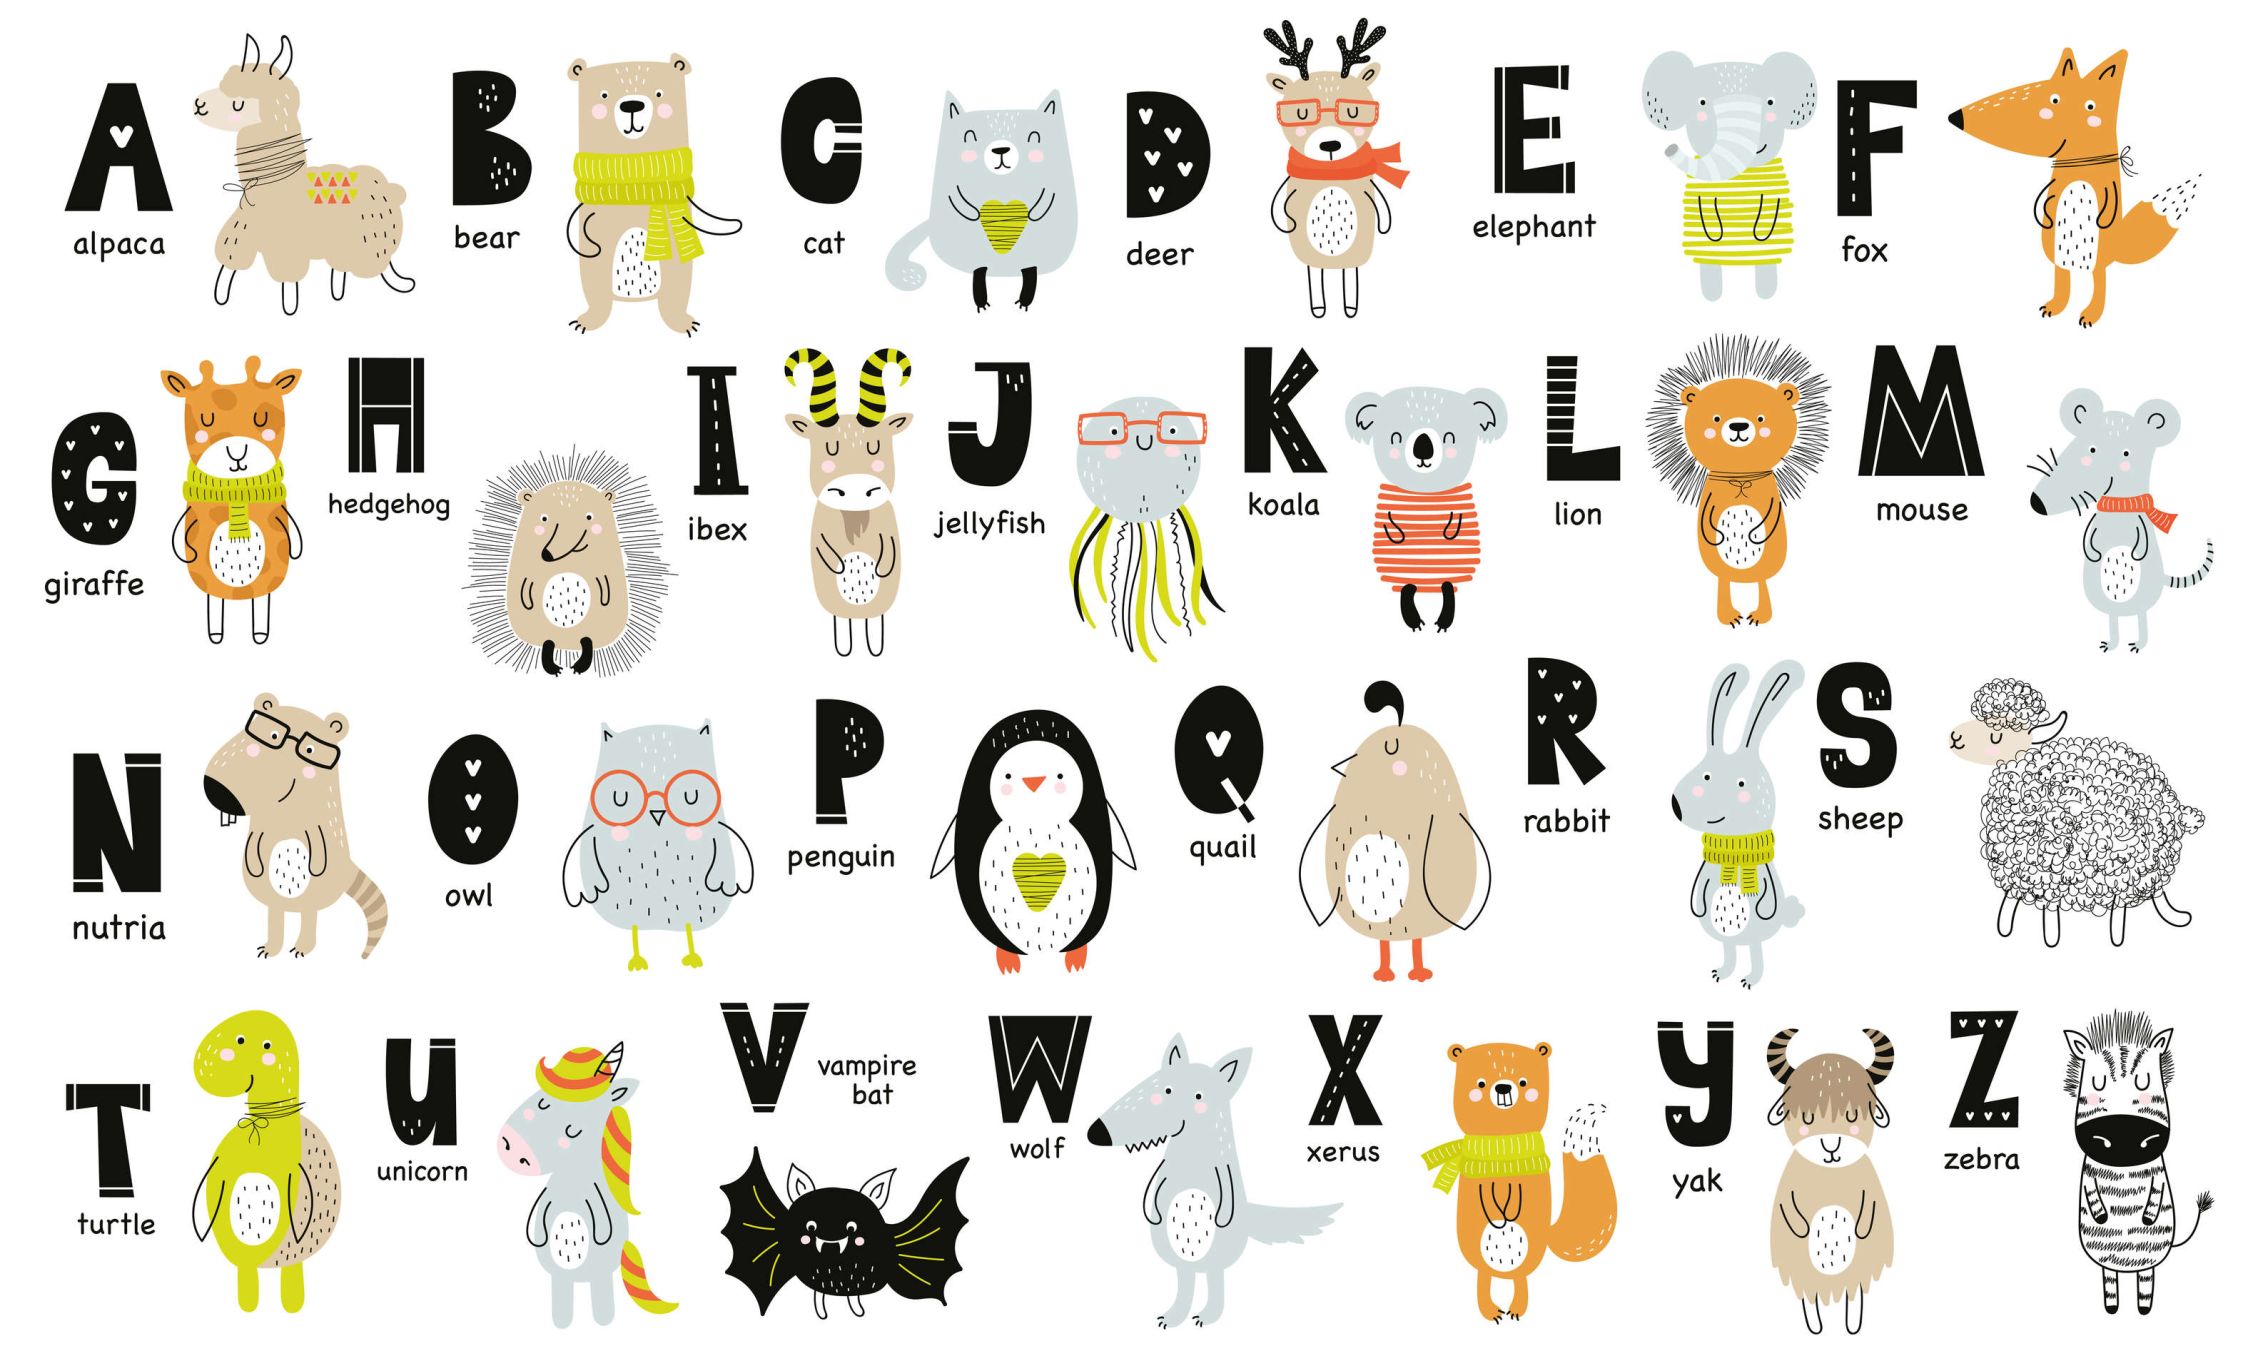             papiers peints à impression numérique Alphabet avec animaux et noms d'animaux - intissé lisse & légèrement brillant
        